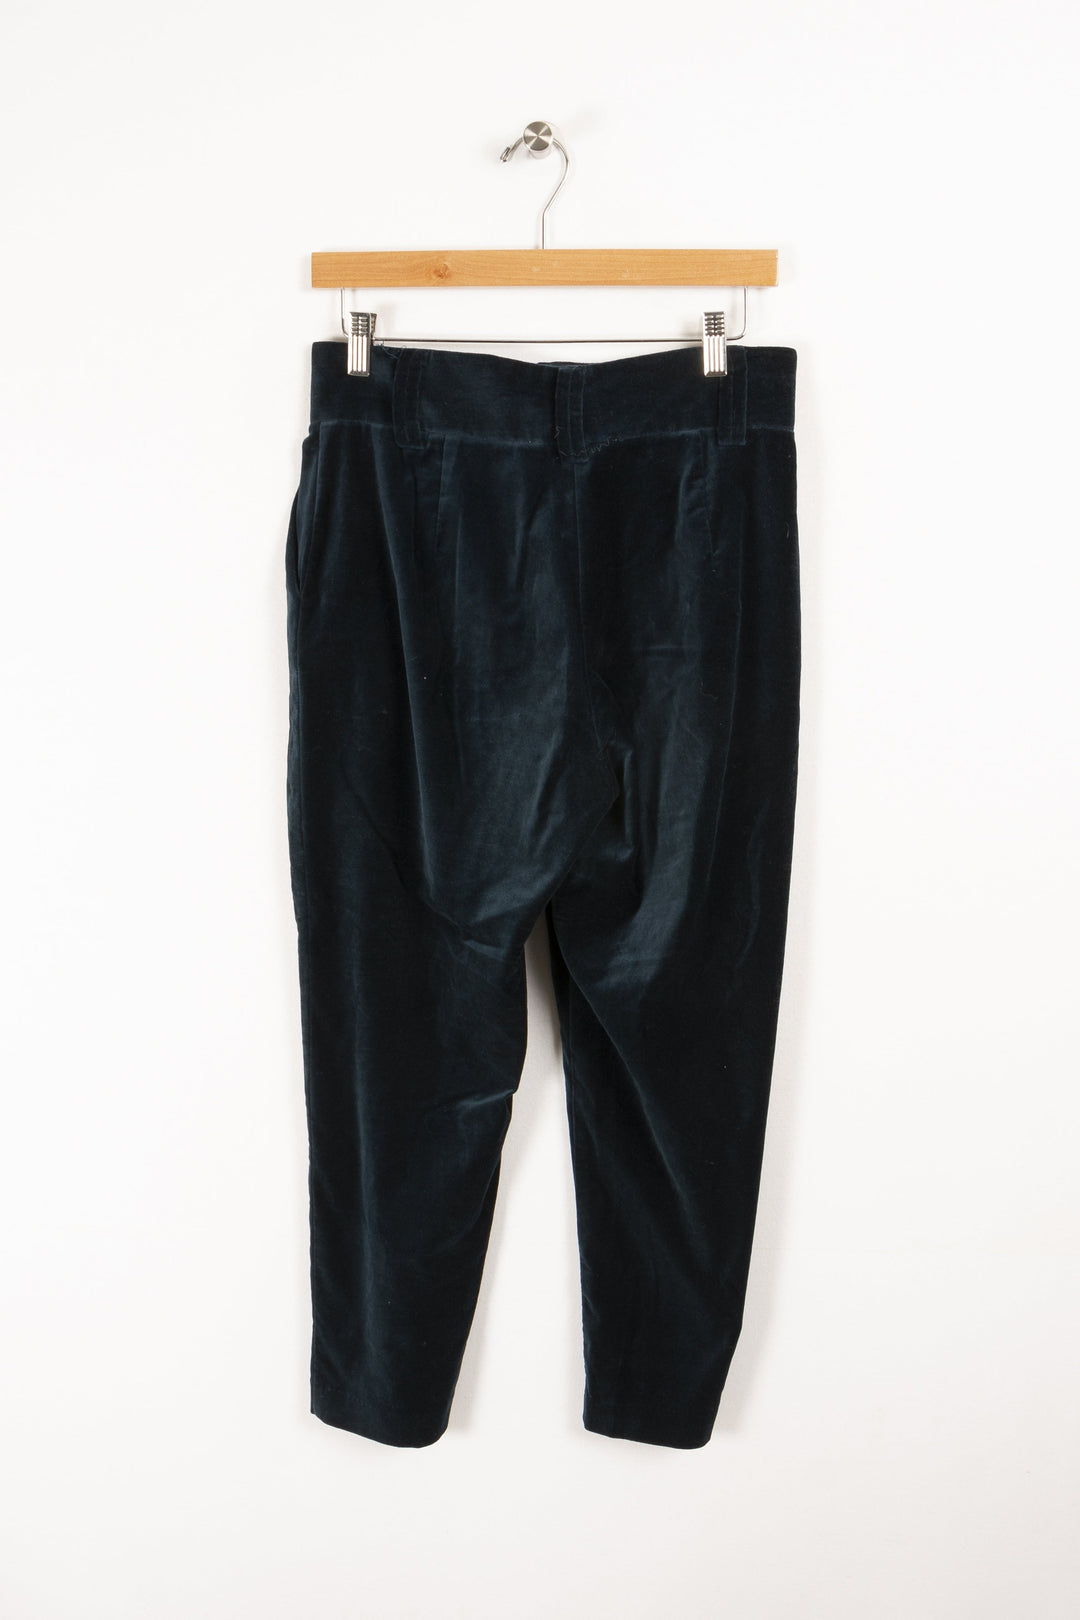 Blue pants - S/36